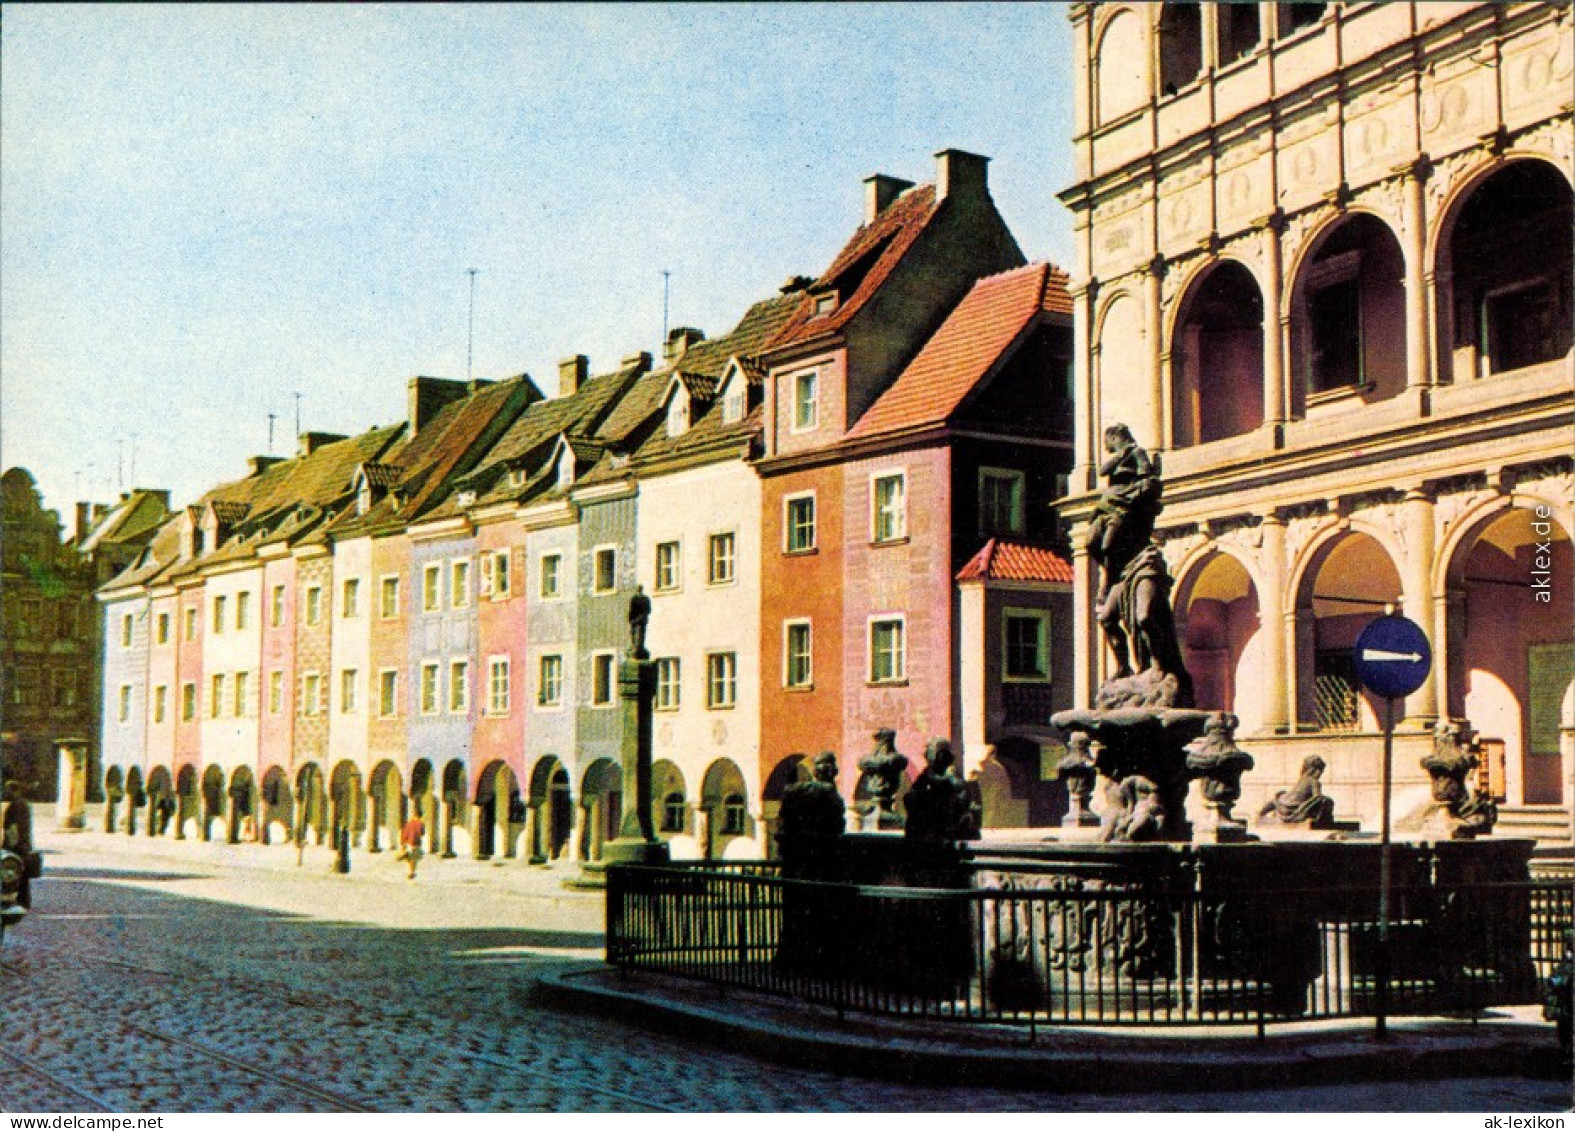 Ansichtskarte Posen Poznań Fragment Starego Rynku Platz 1972 - Poland